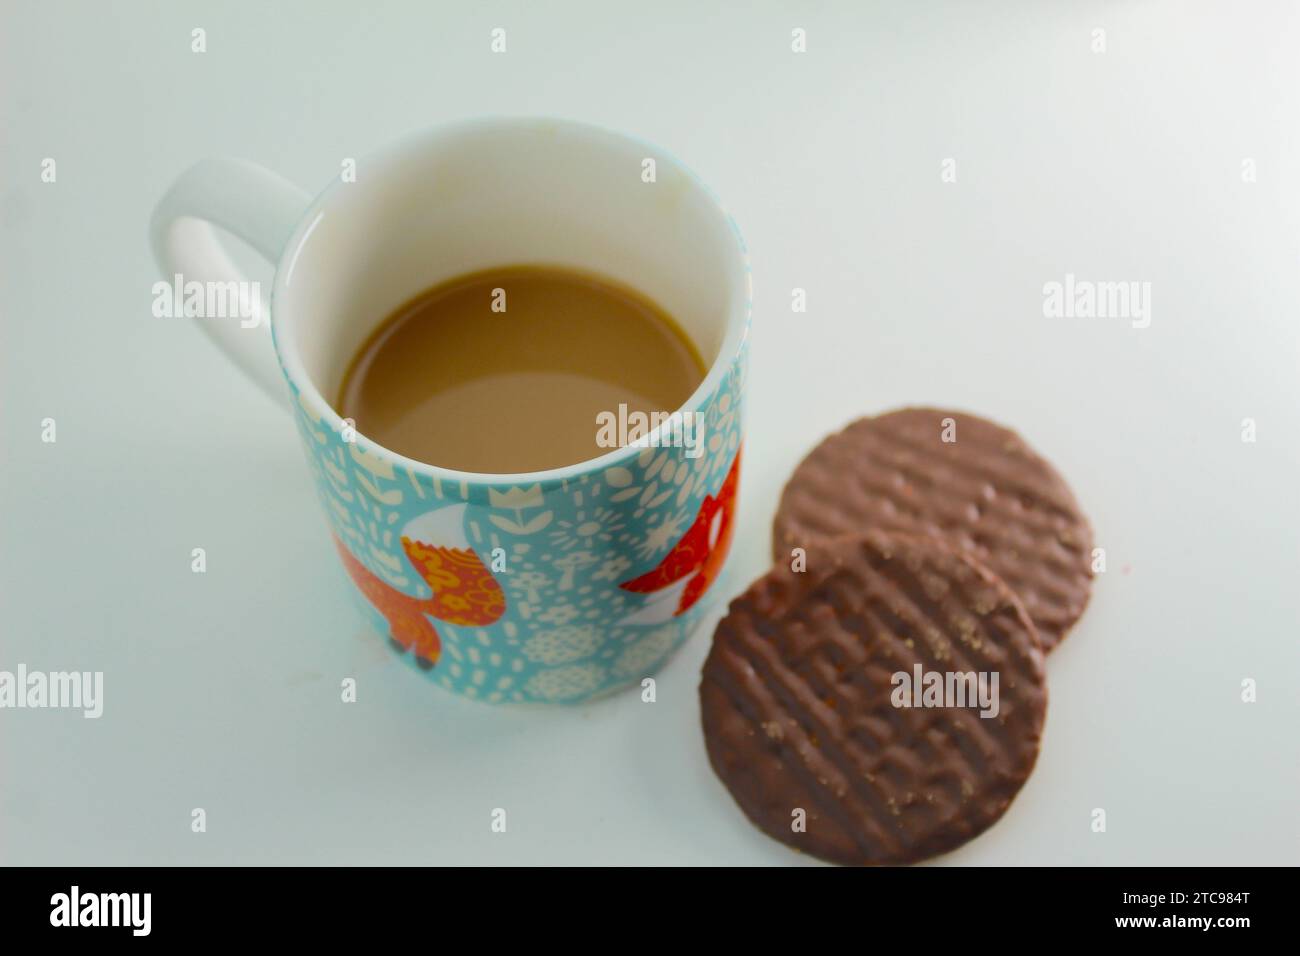 Une photo rapprochée d'une personne trempant un digestif au chocolat dans une tasse de thé. Banque D'Images